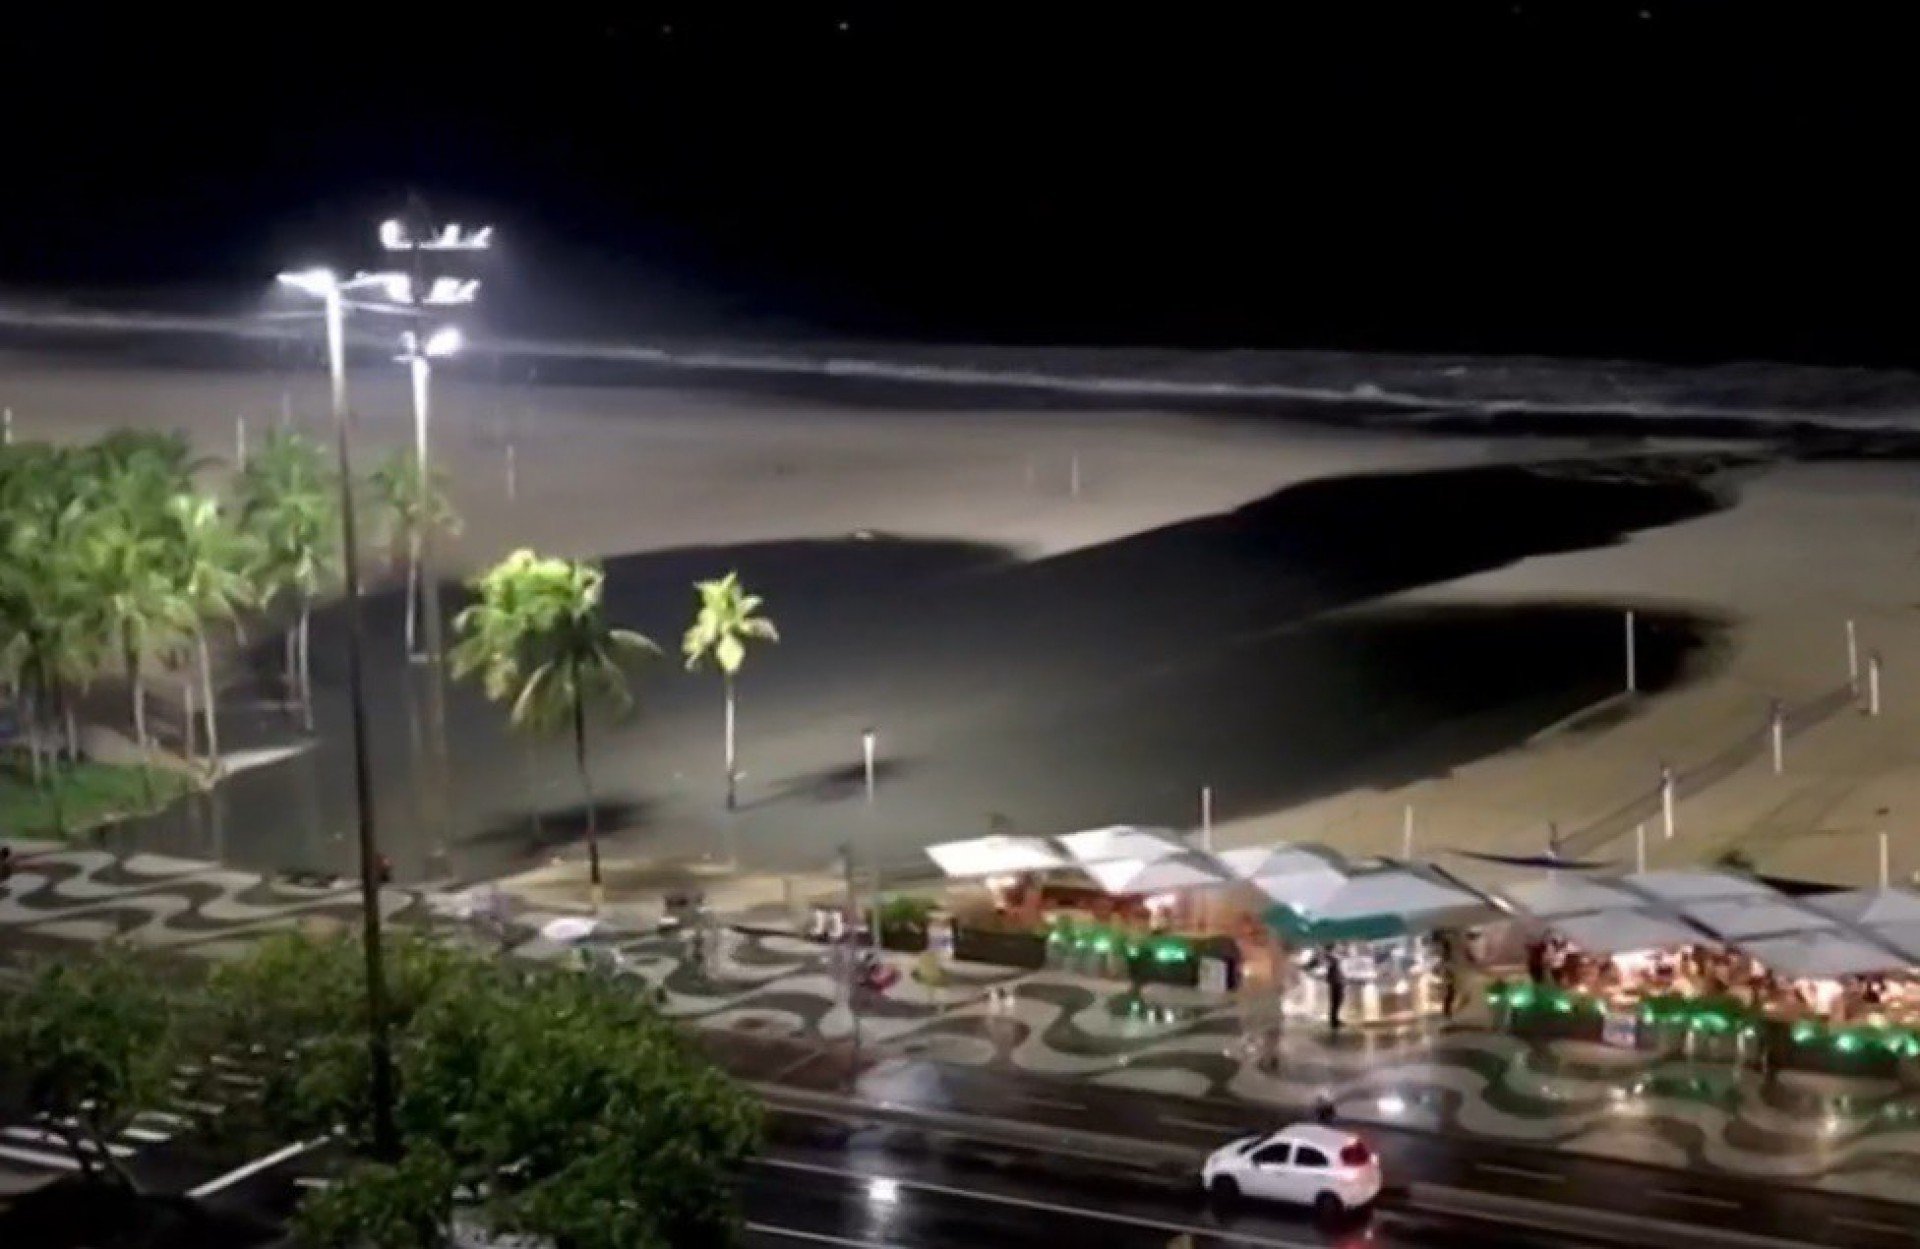 Vazamento de esgoto causou grande mancha na noite desta quarta-feira na praia de Copacabana - Reprodução / TV Globo